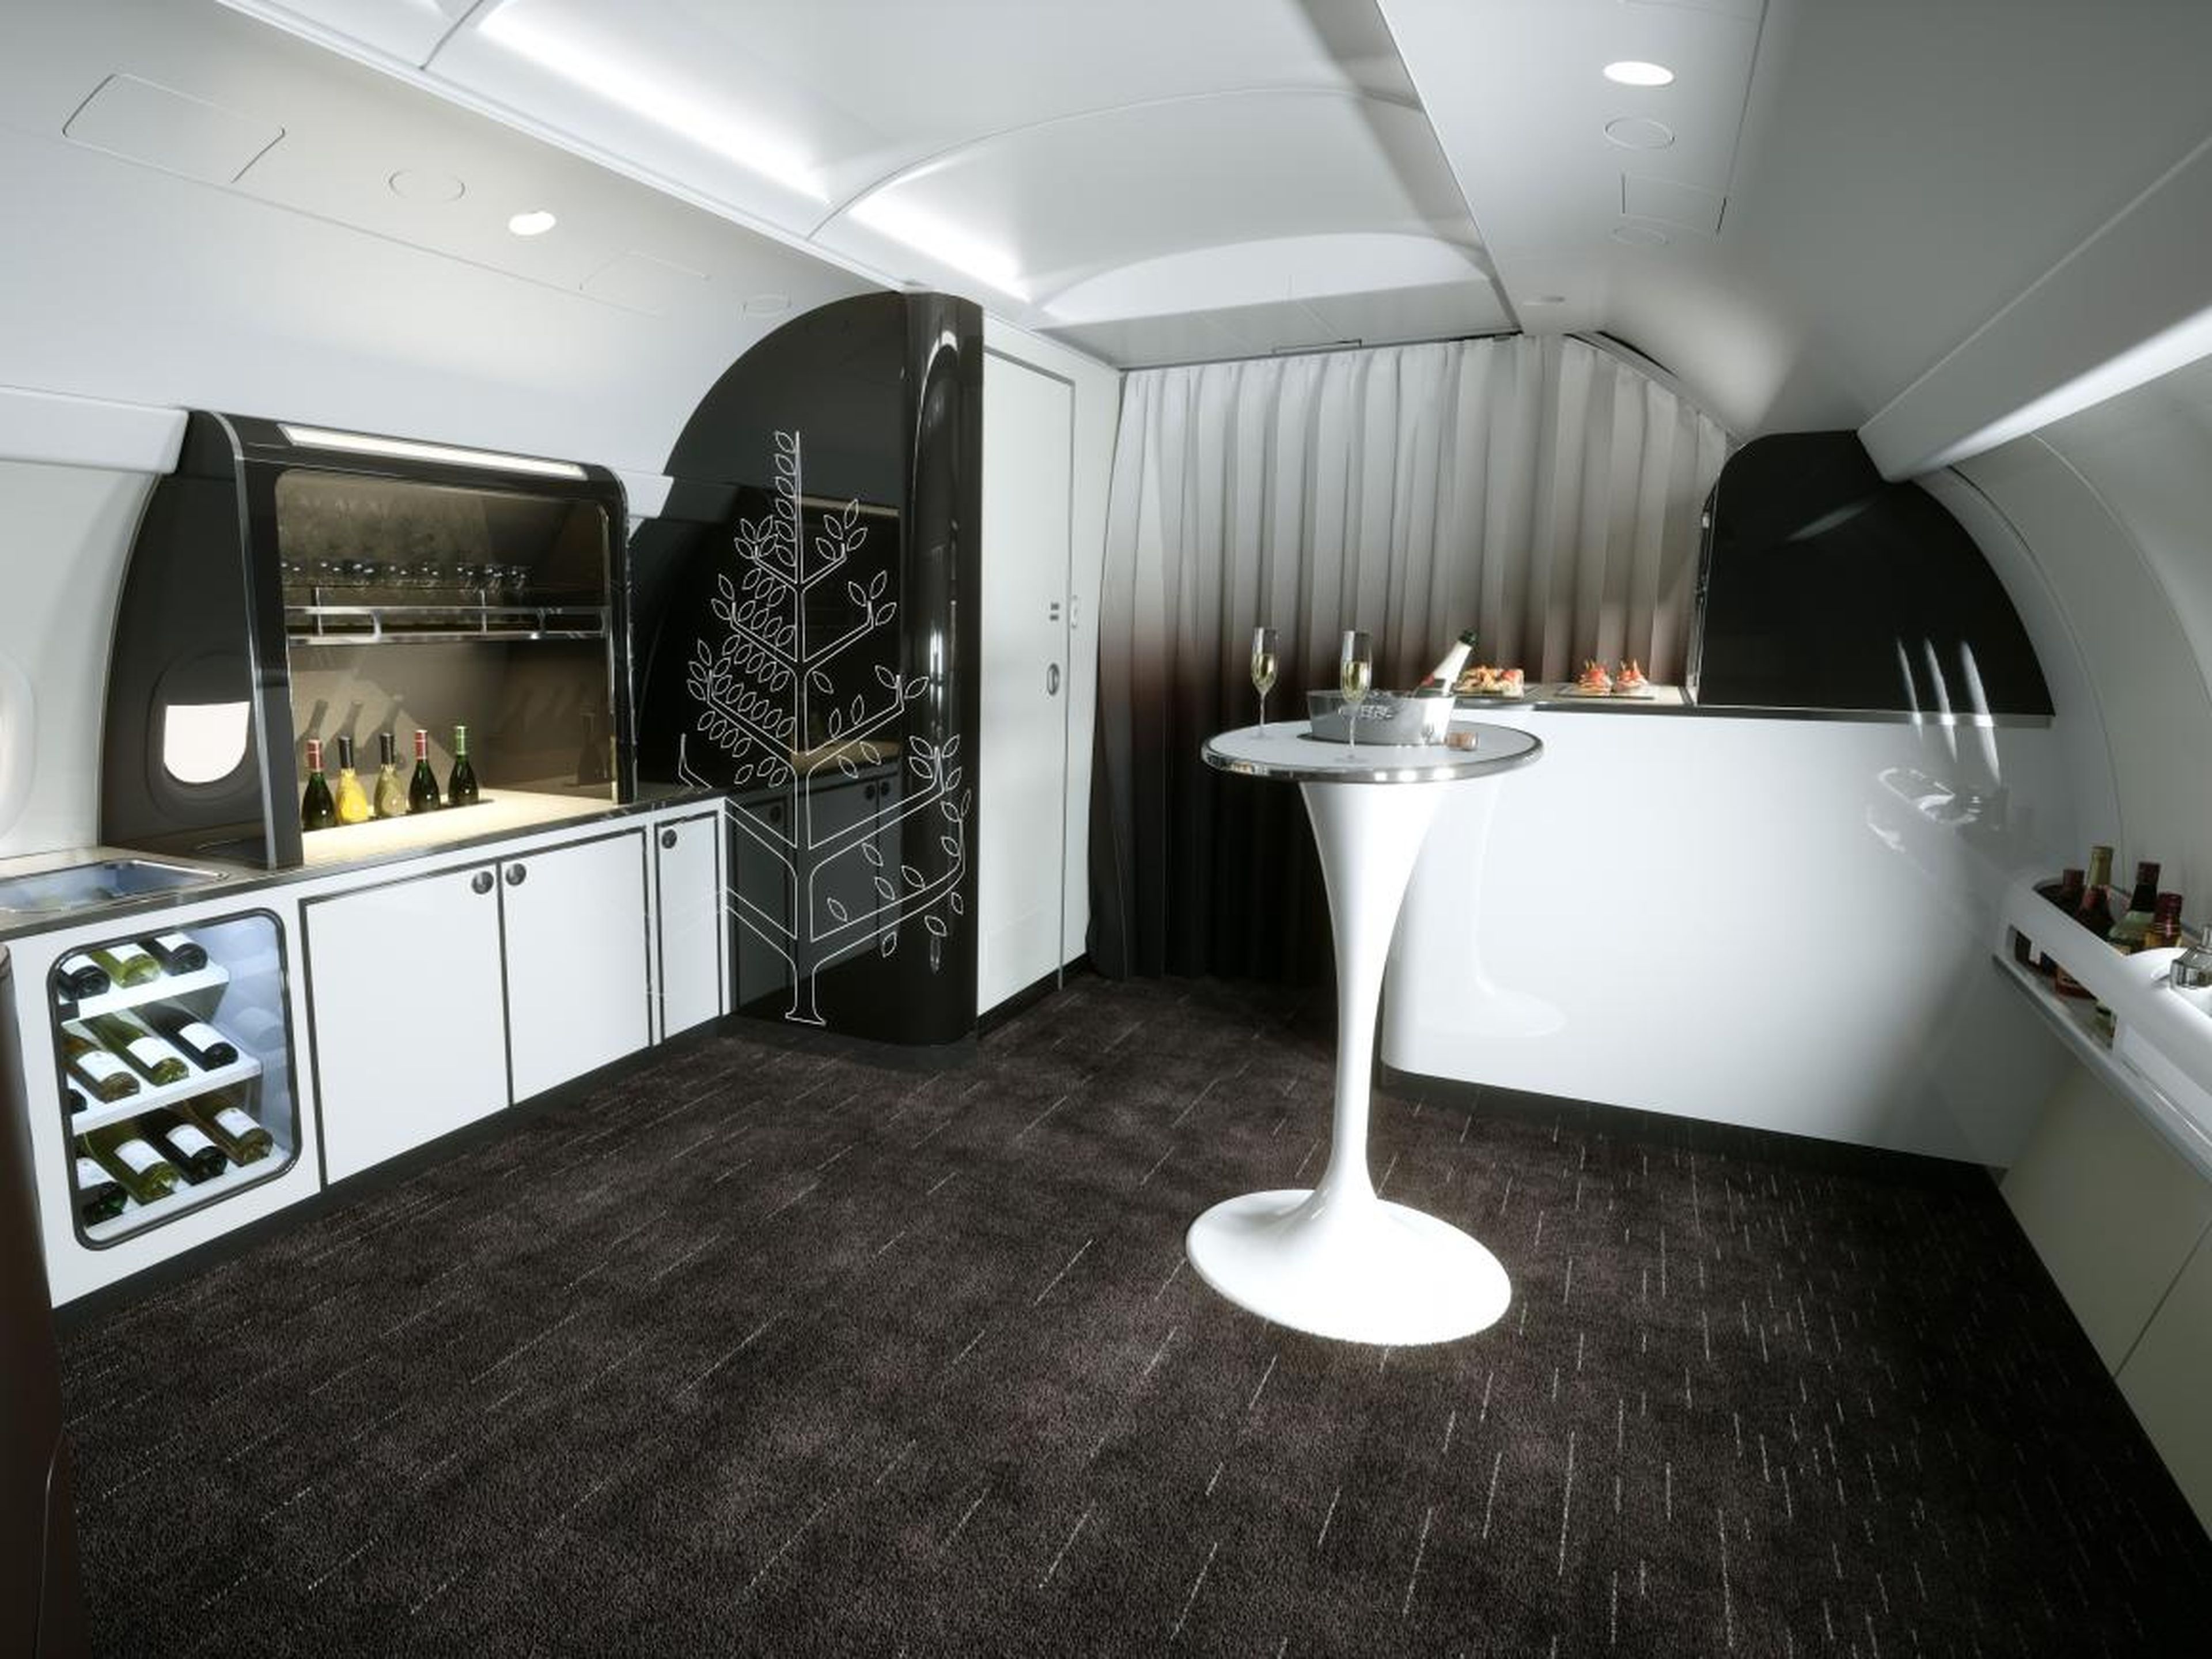 La característica más nueva del jet es el área del salón, donde un mixólogo elaborará bebidas personalizadas para los pasajeros. Además, el espacio se utilizará para clases de cocina y actividades de bienestar.